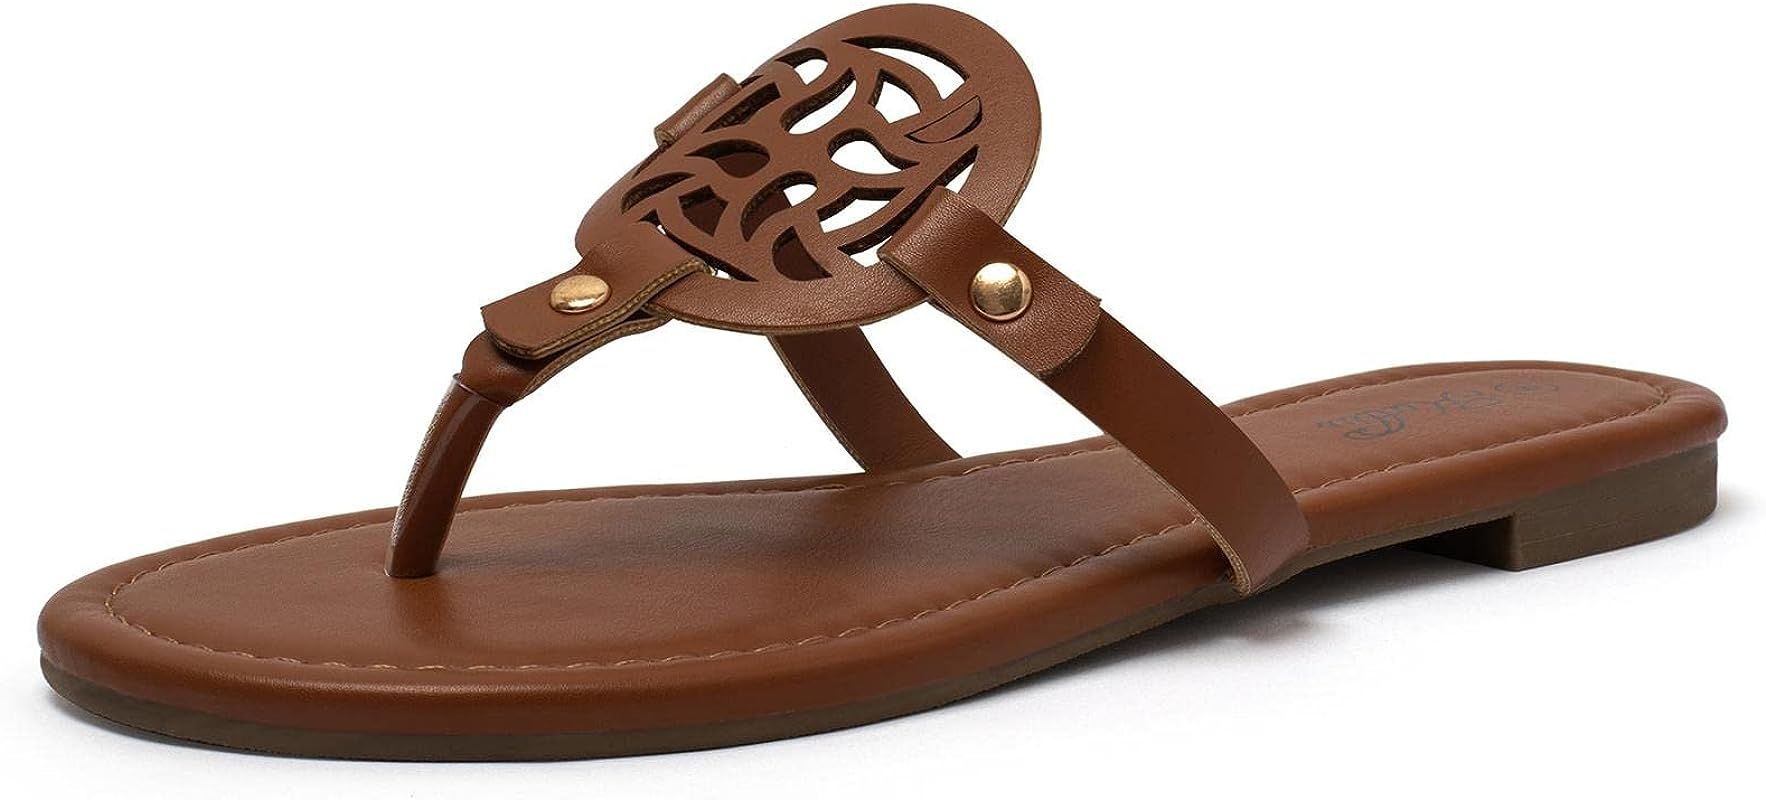 Women's Flat Sandals Flip Flop Sandals Comfortable Dressy Thong Sandals | Amazon (US)